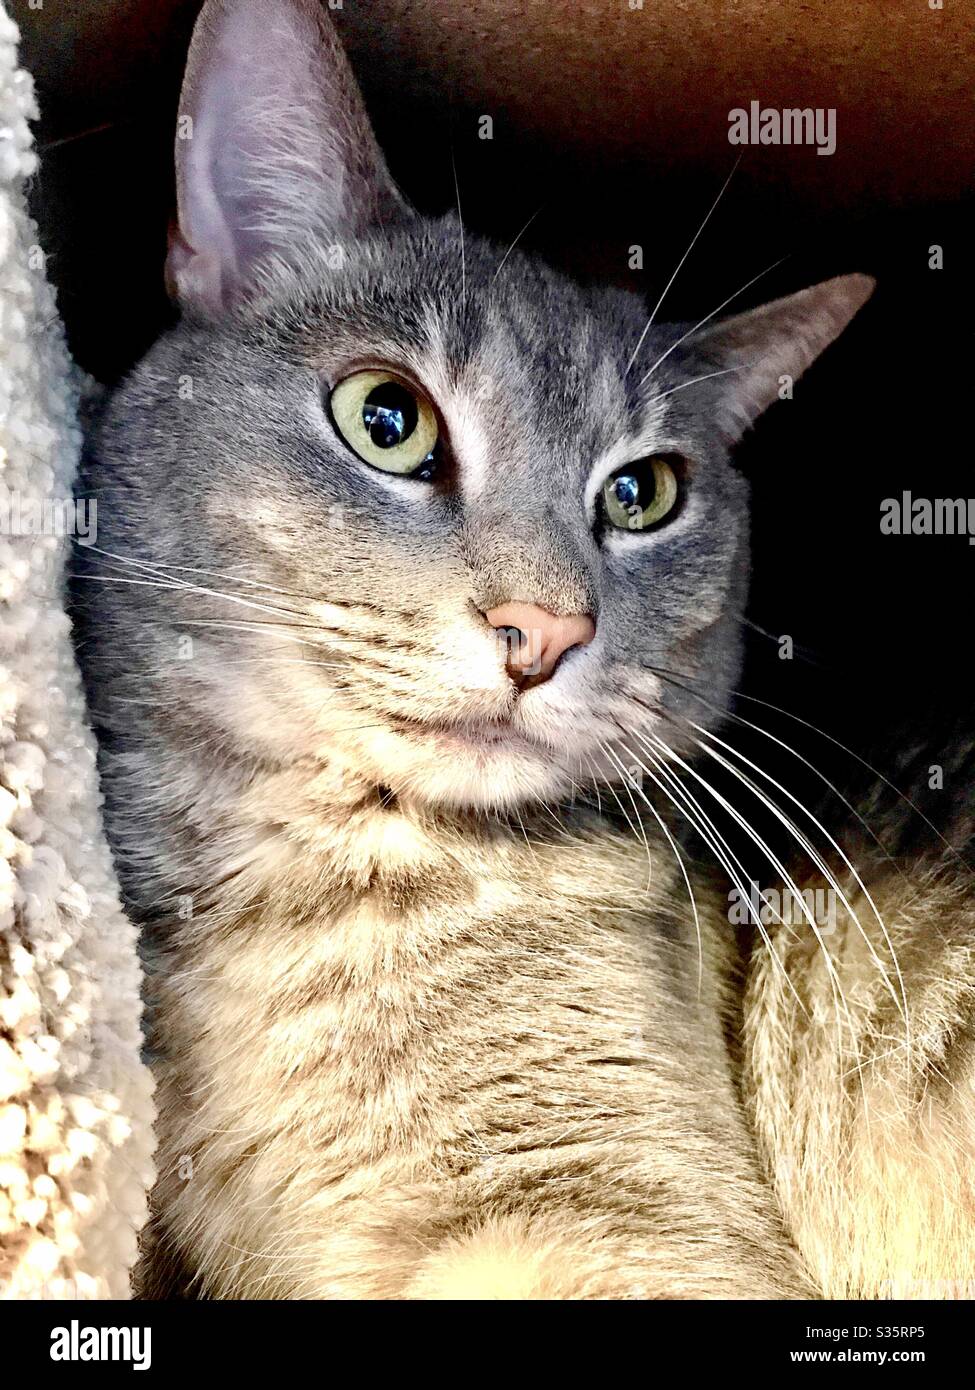 Portrait de beau chat tabby gris argent avec de magnifiques yeux verts arraché dans son appartement chaton et regarder dehors, animal de compagnie intérieur compagnon femelle de sauvetage chat domestique ou américain shorthair Banque D'Images